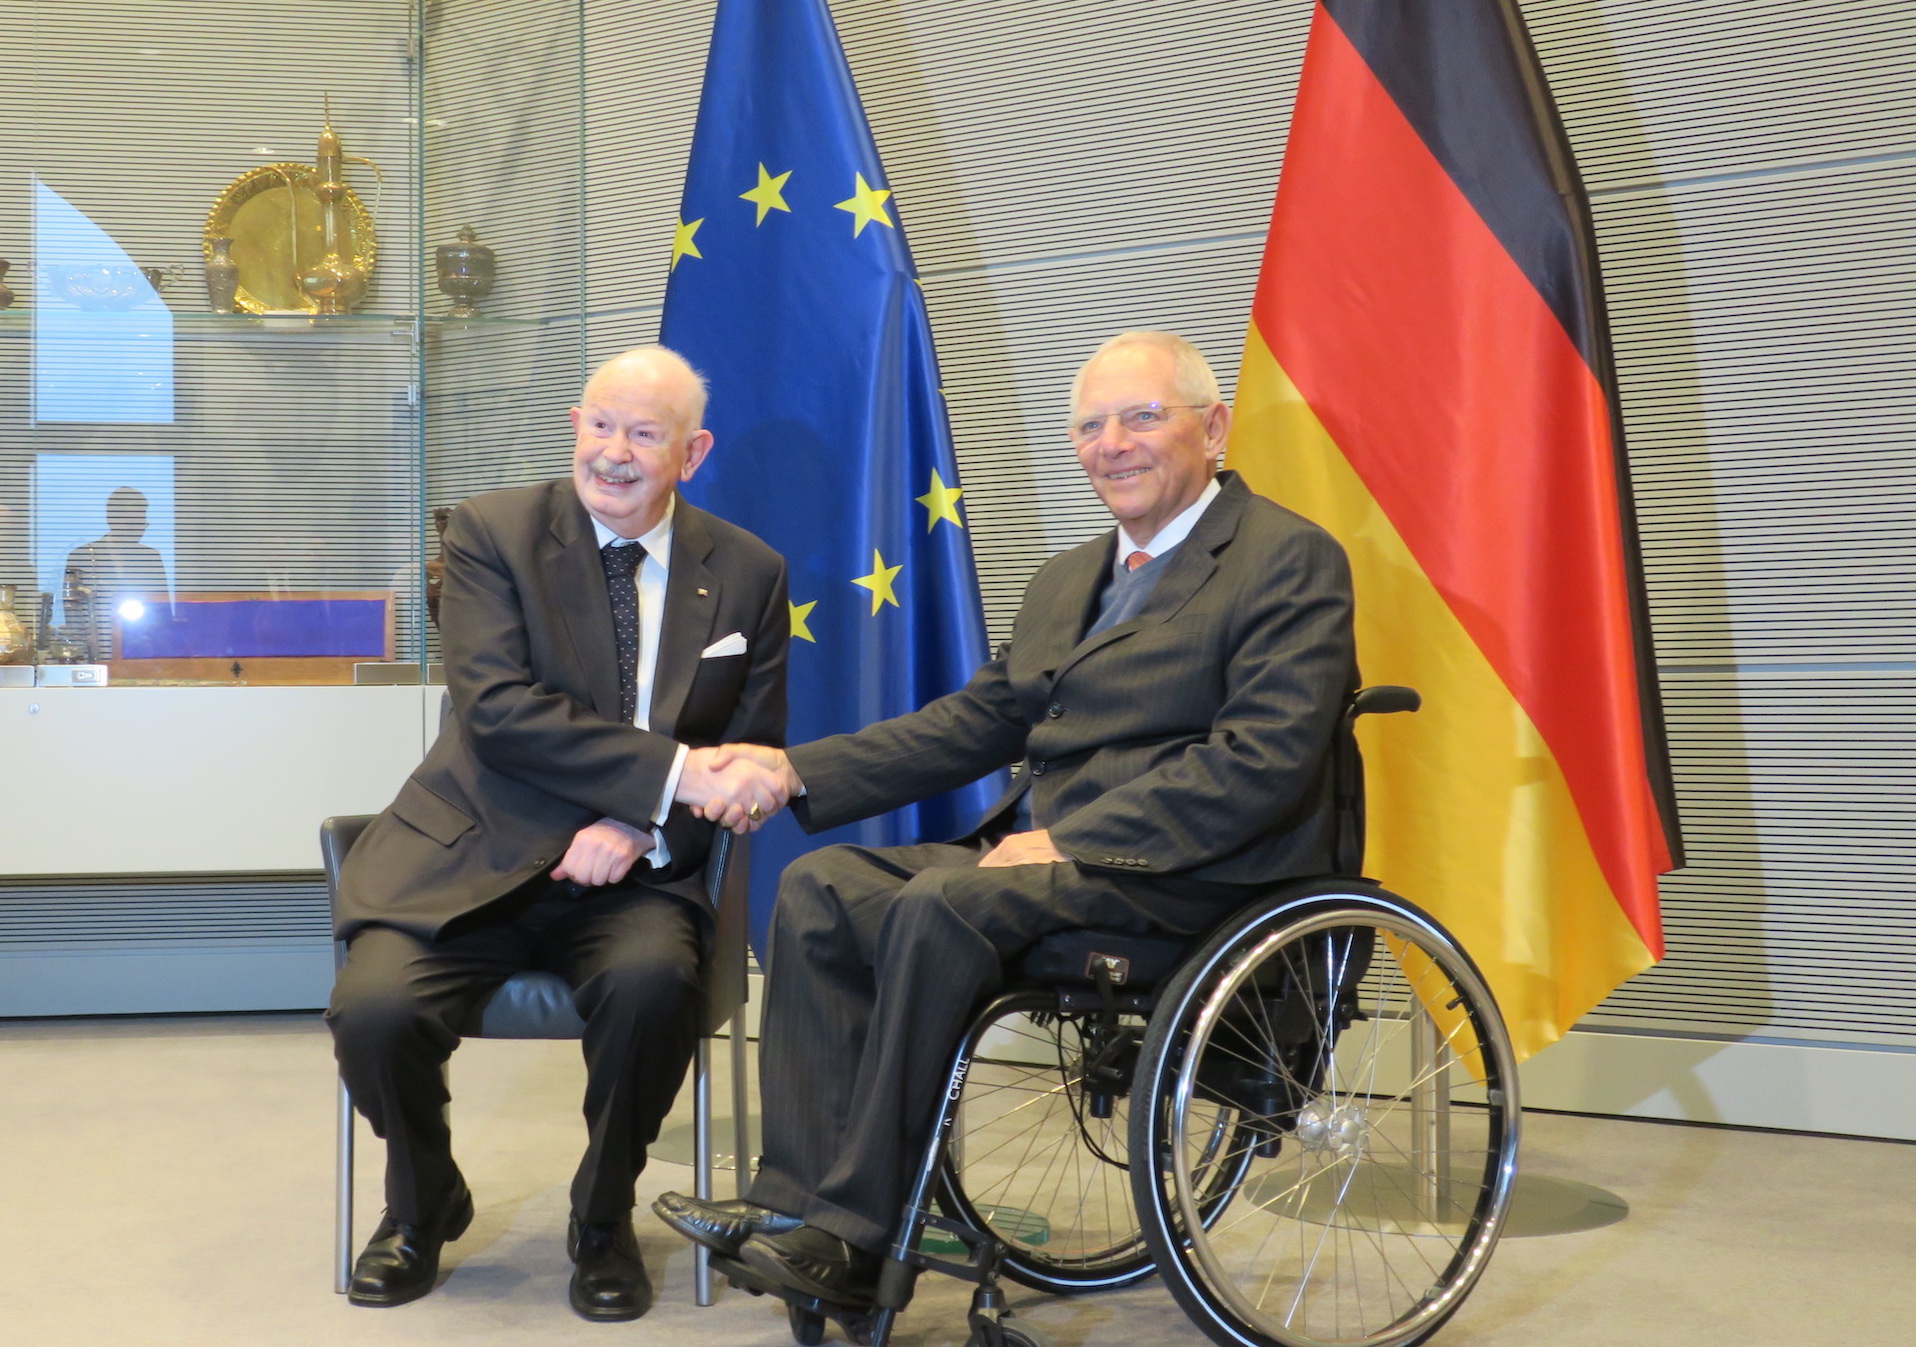 Der Großmeister auf Staatsbesuch in Deutschland: Am Donnerstag Begegnung mit Bundespräsident Steinmeier und Bundestagspräsident Schäuble